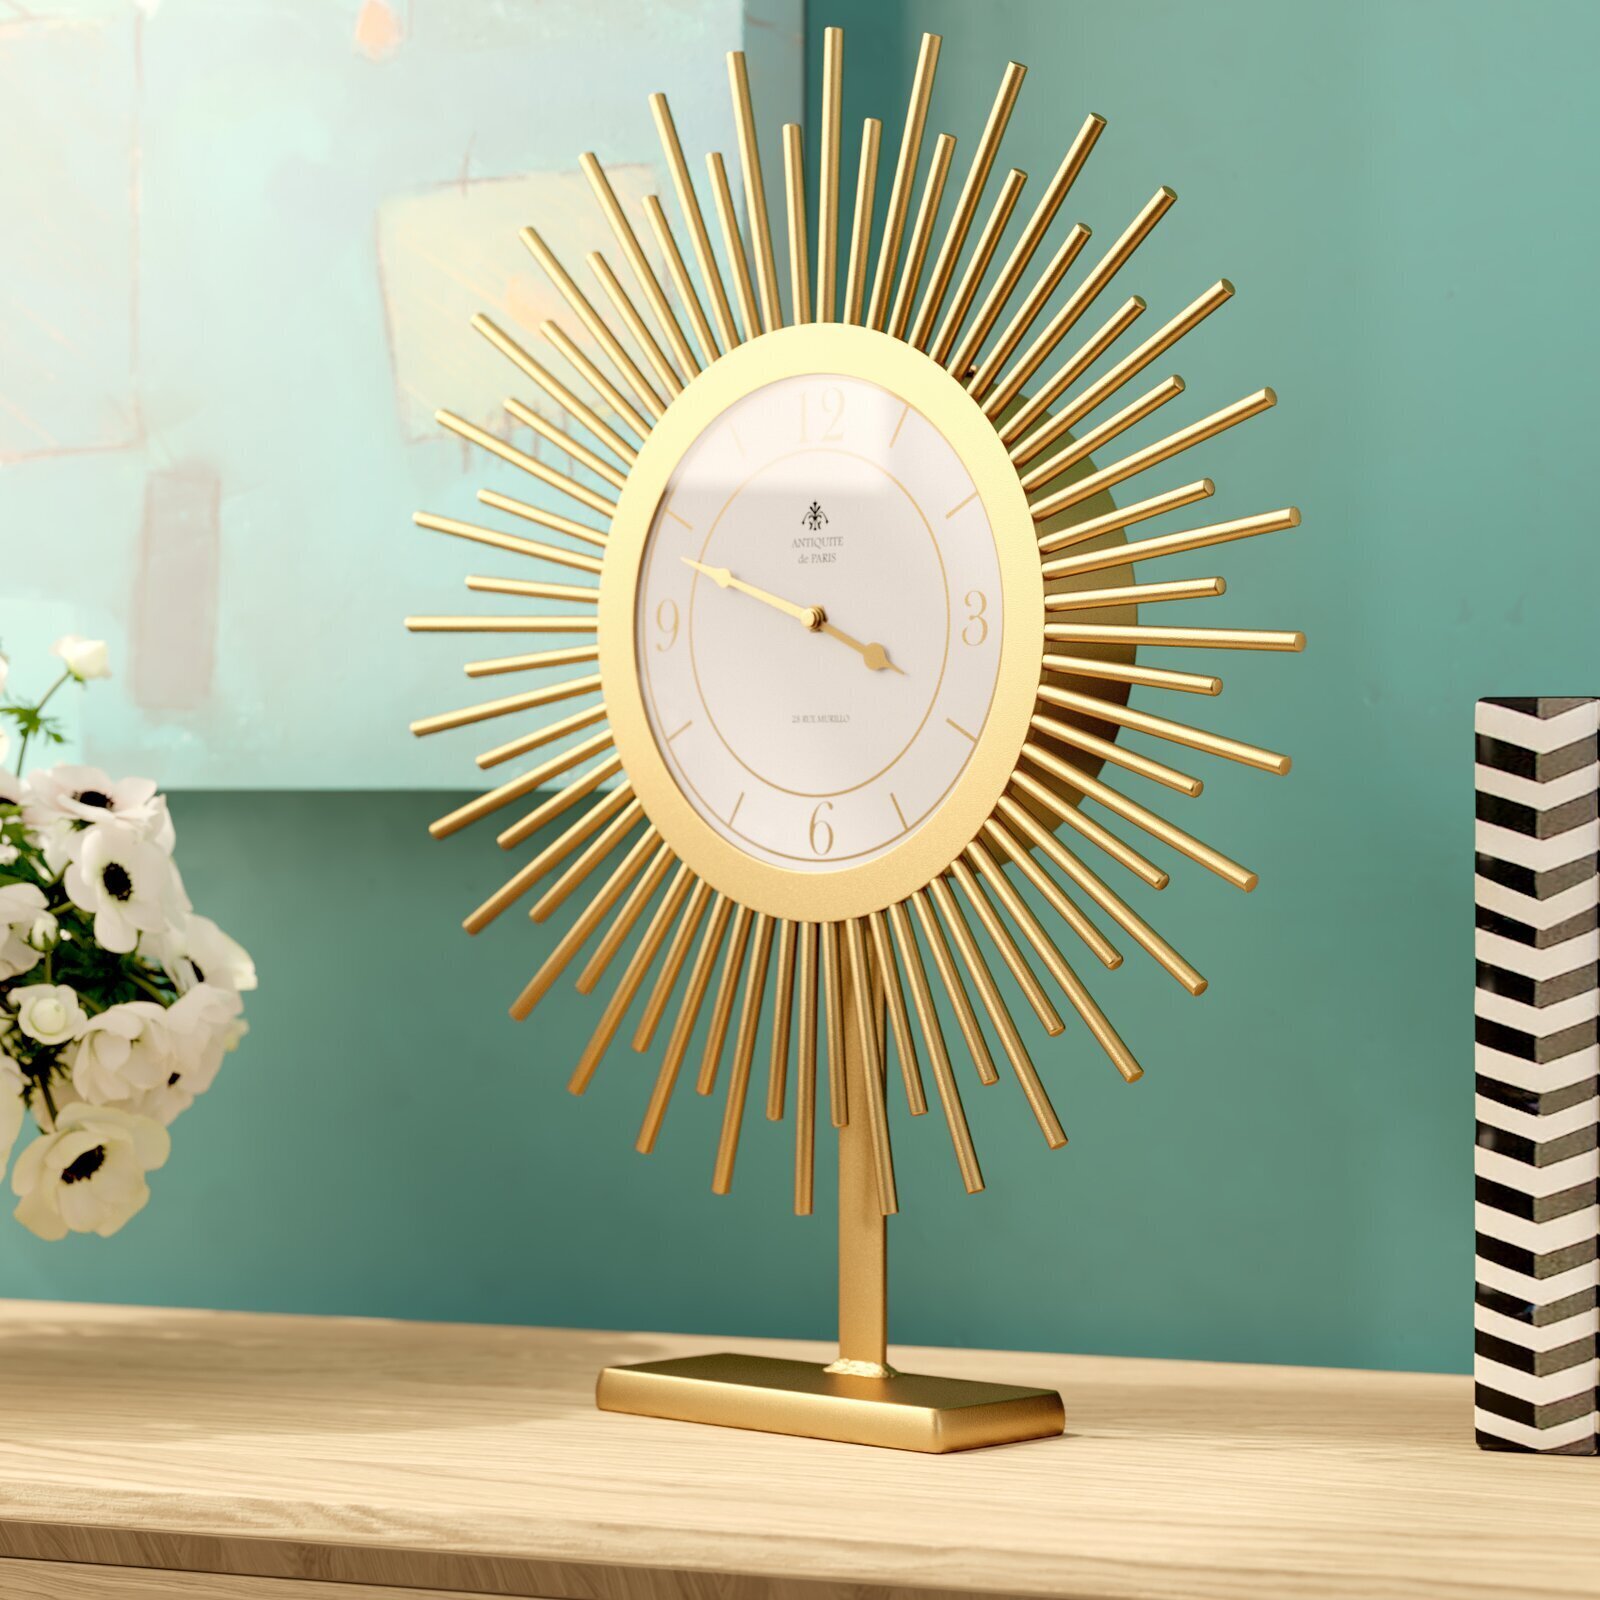 Sundial Cool Desk Clock